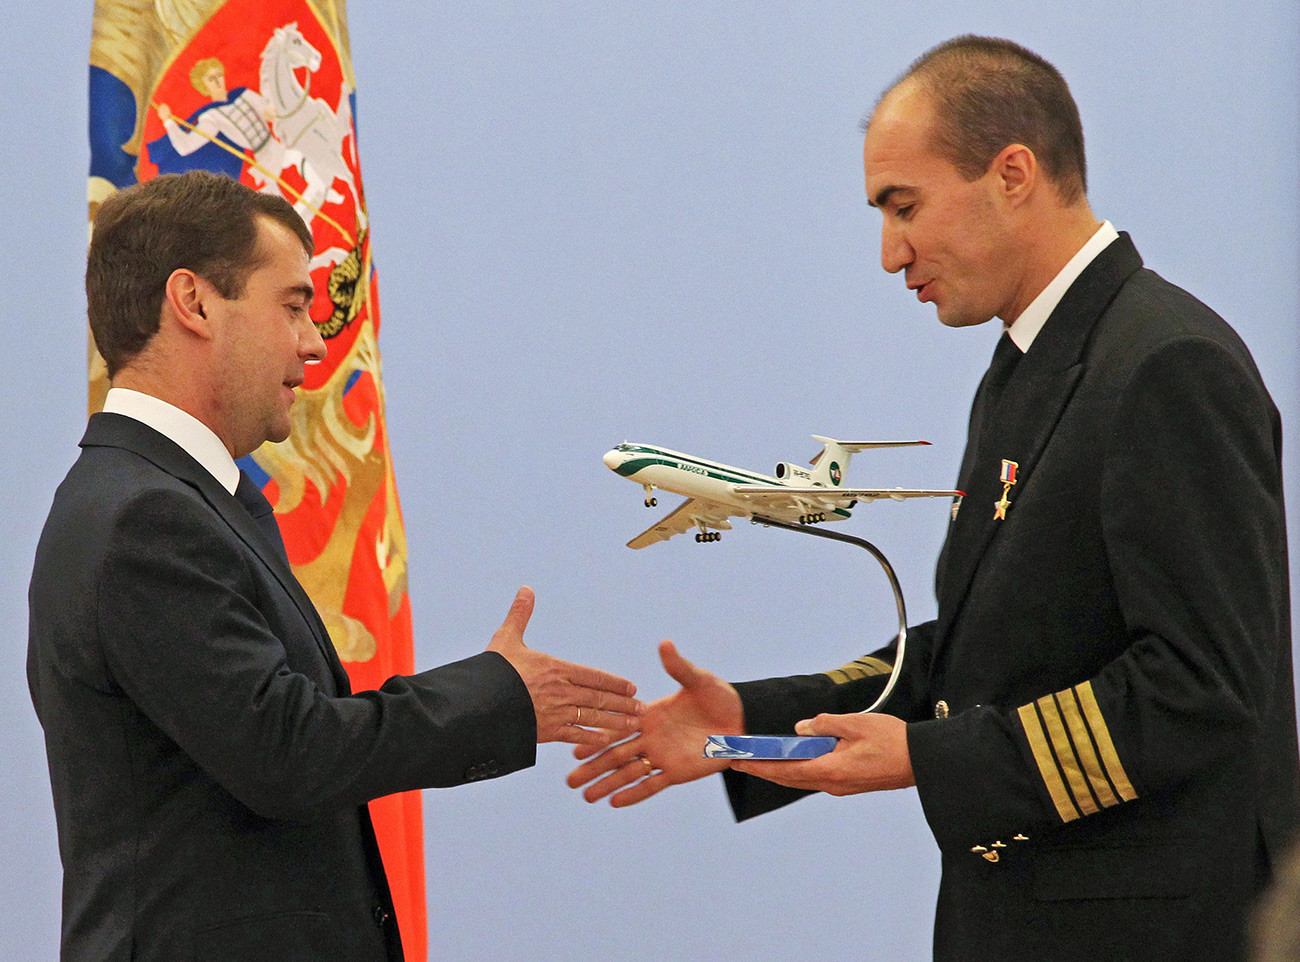 Predsjednik Rusije Dmitrij Medvedev čestita kapetanu zrakoplova Tu-154 Jevgeniju Novosjolovu, koji je nagrađen zvanjem Heroja Rusije.

